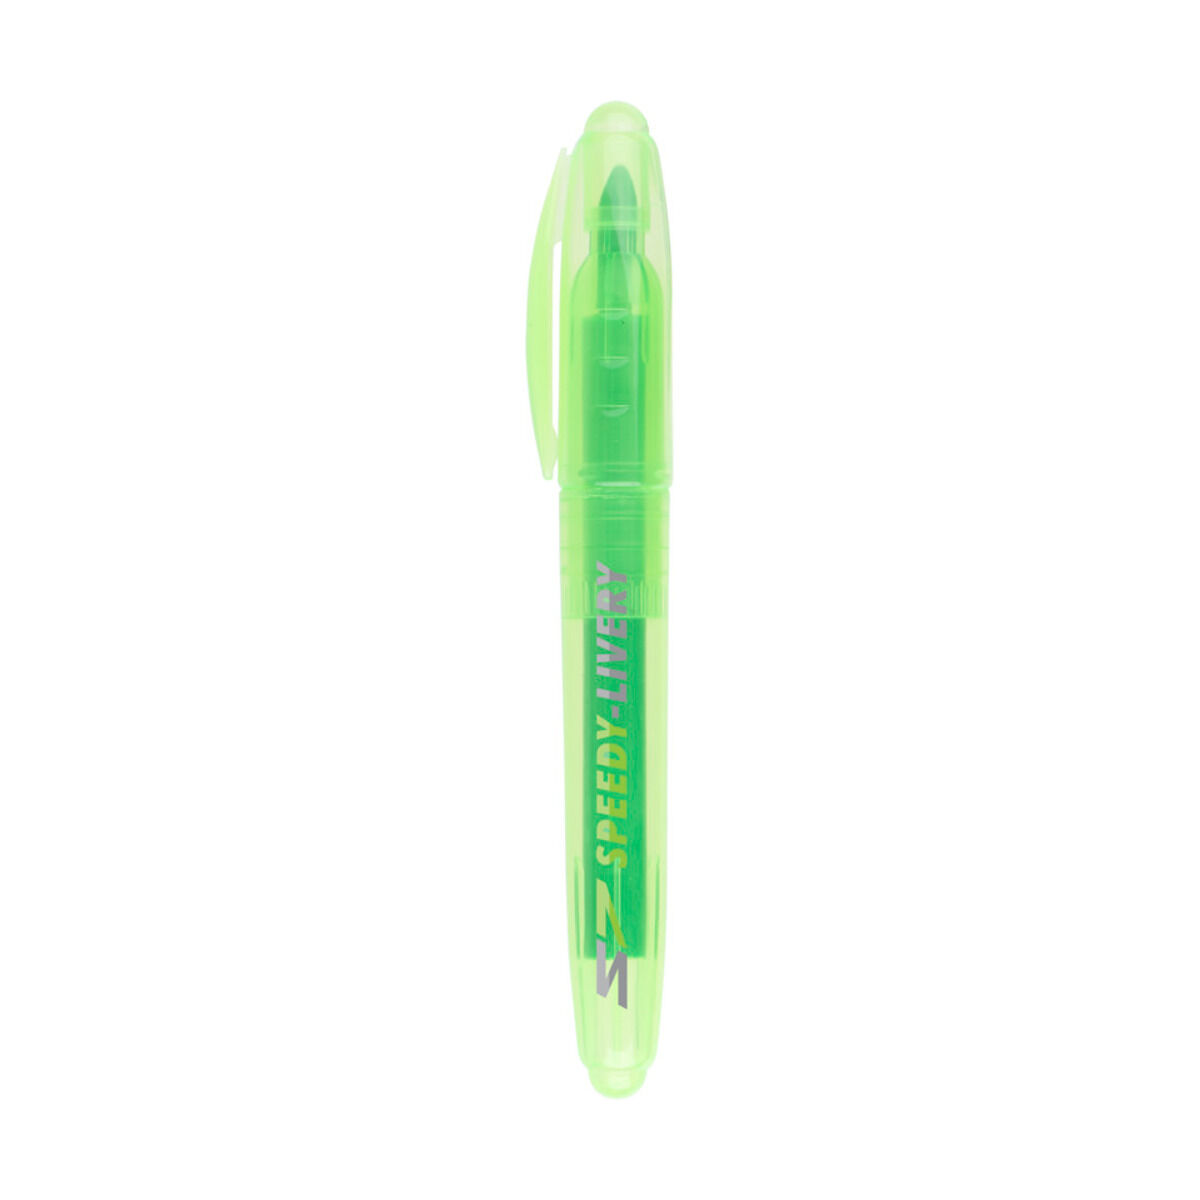 Mondo Highlighter Pen (sample branding)